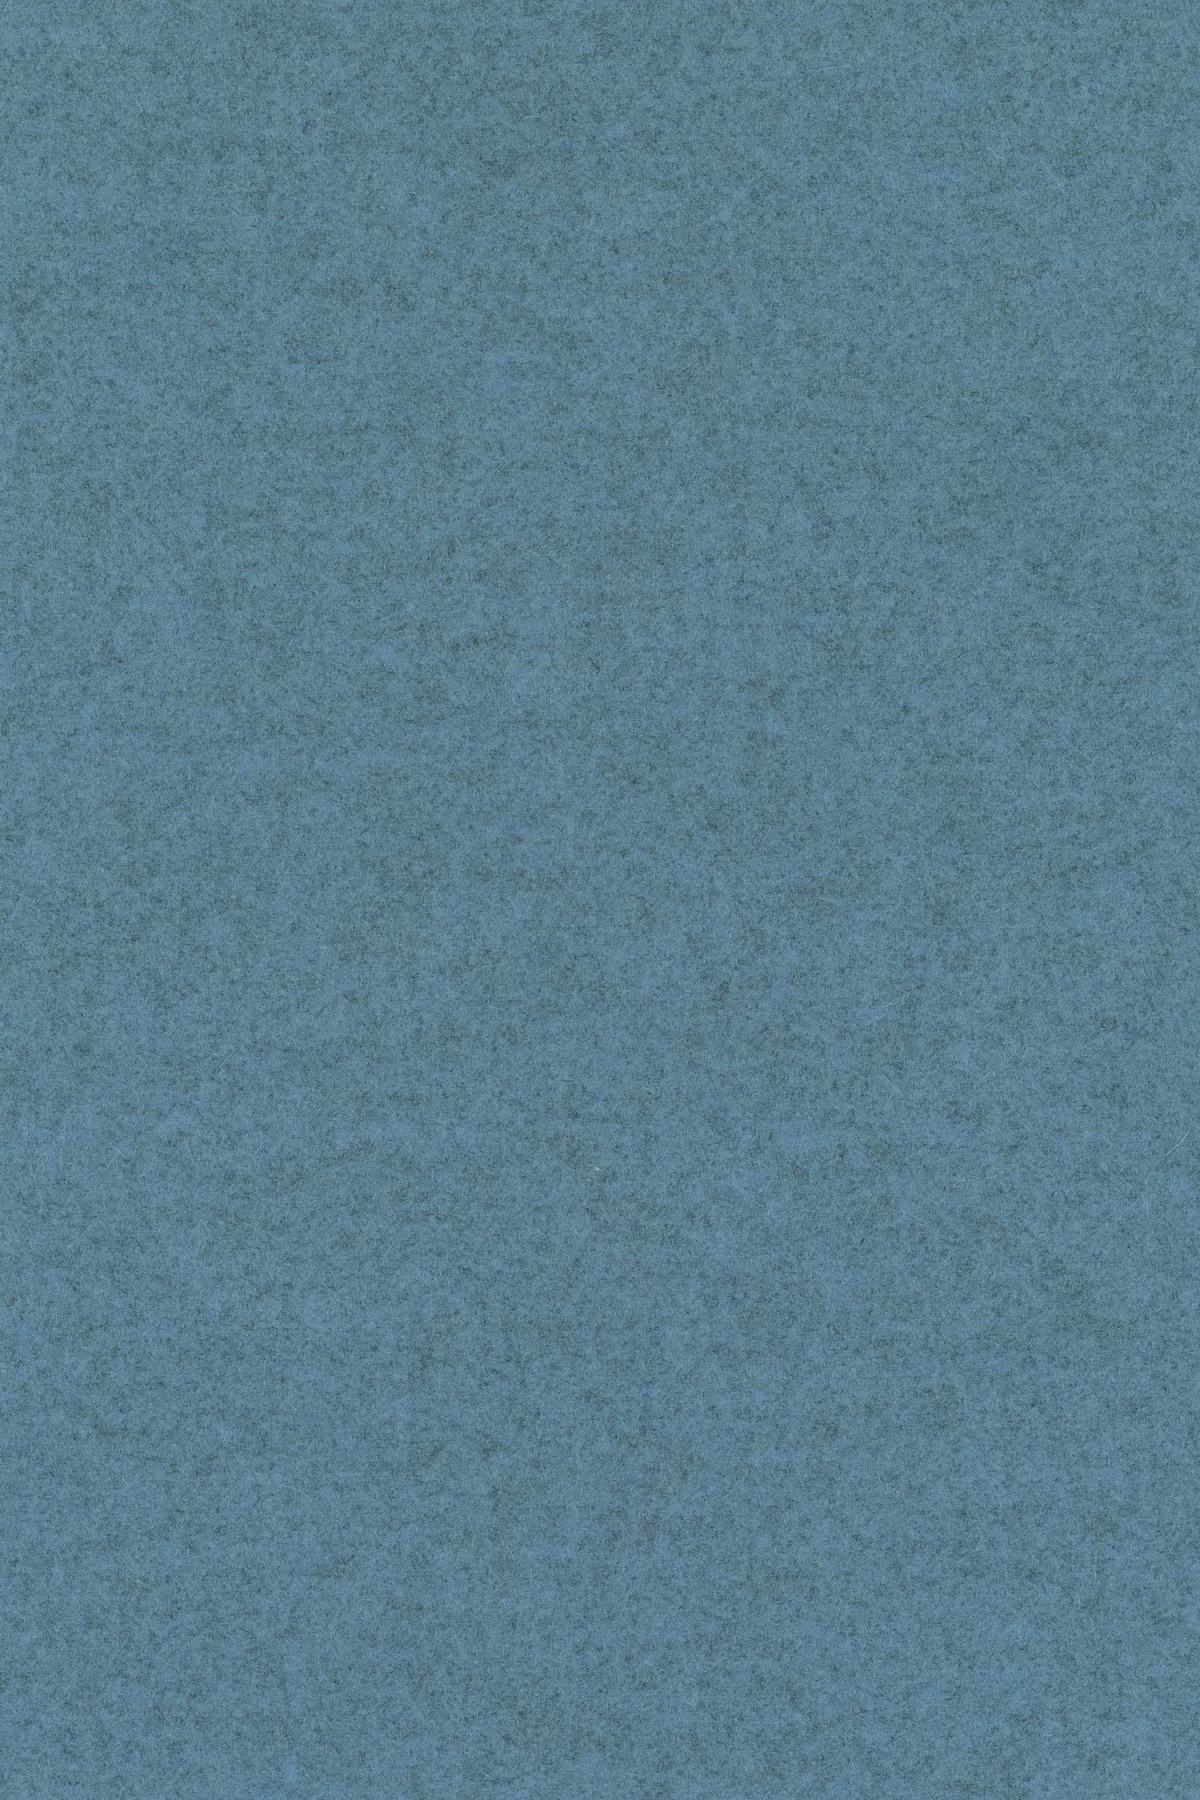 Fabric sample Divina Melange 3 731 blue